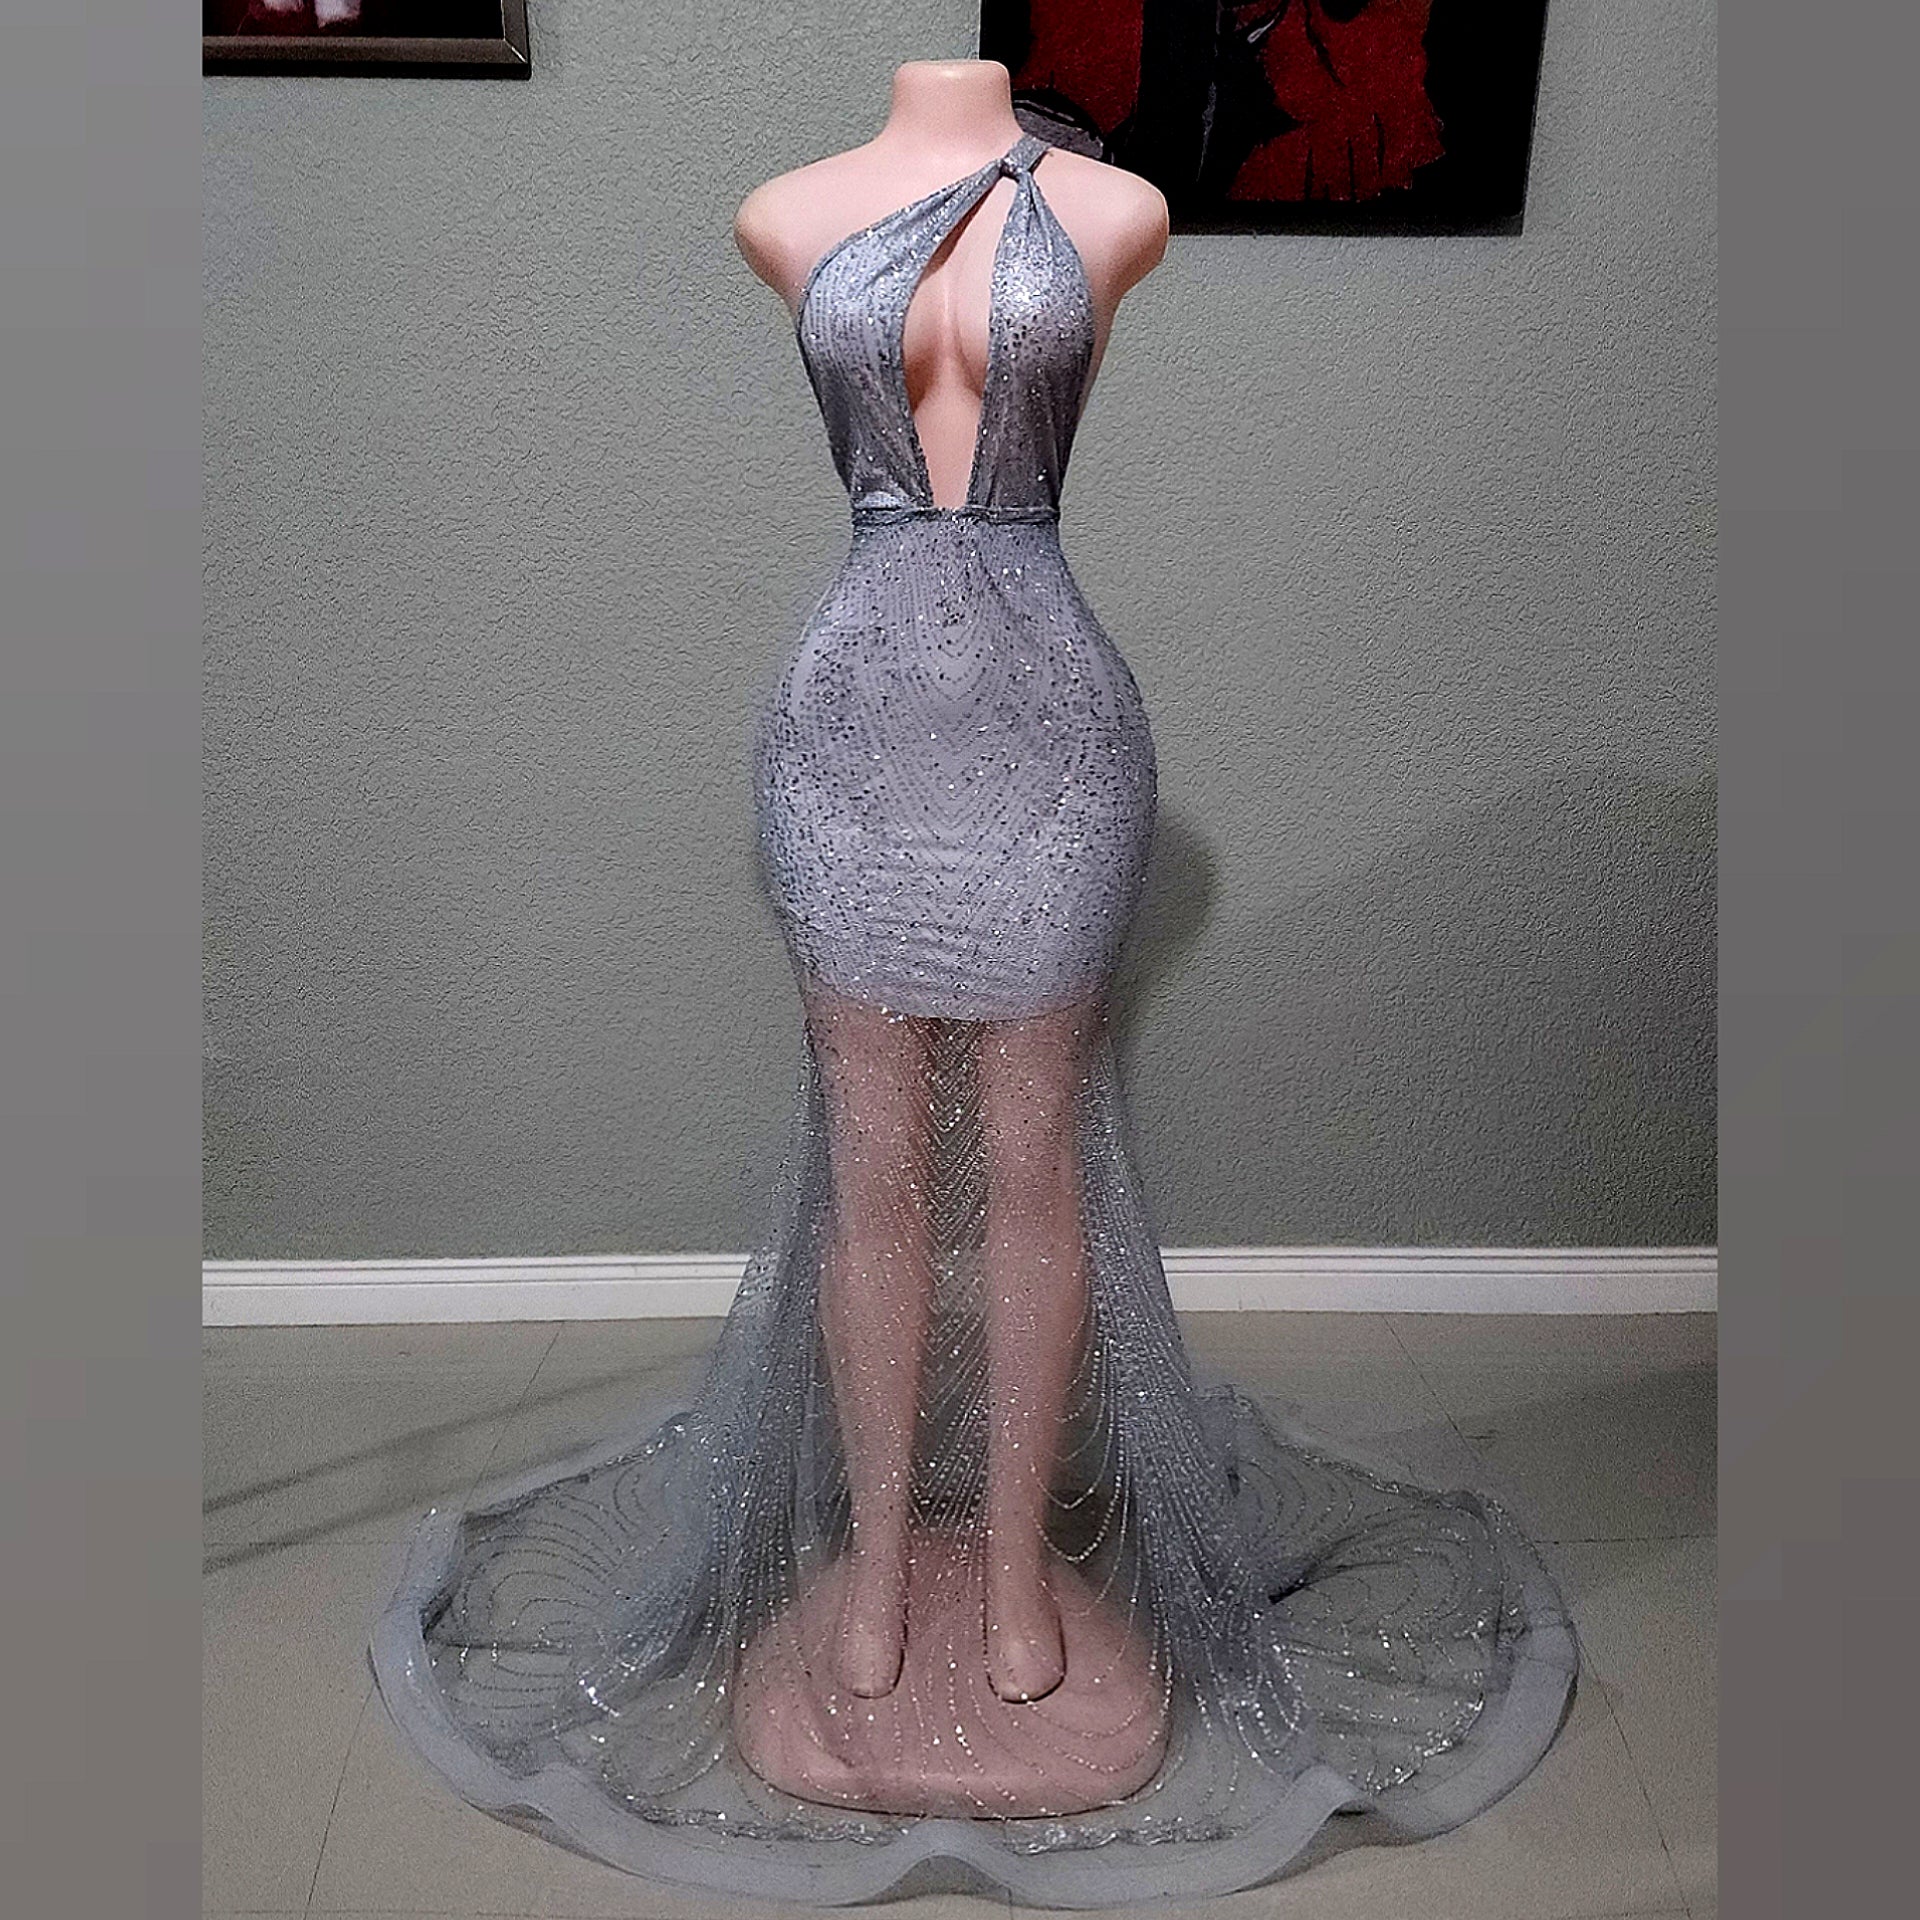 Solange Glitter mermaid dress